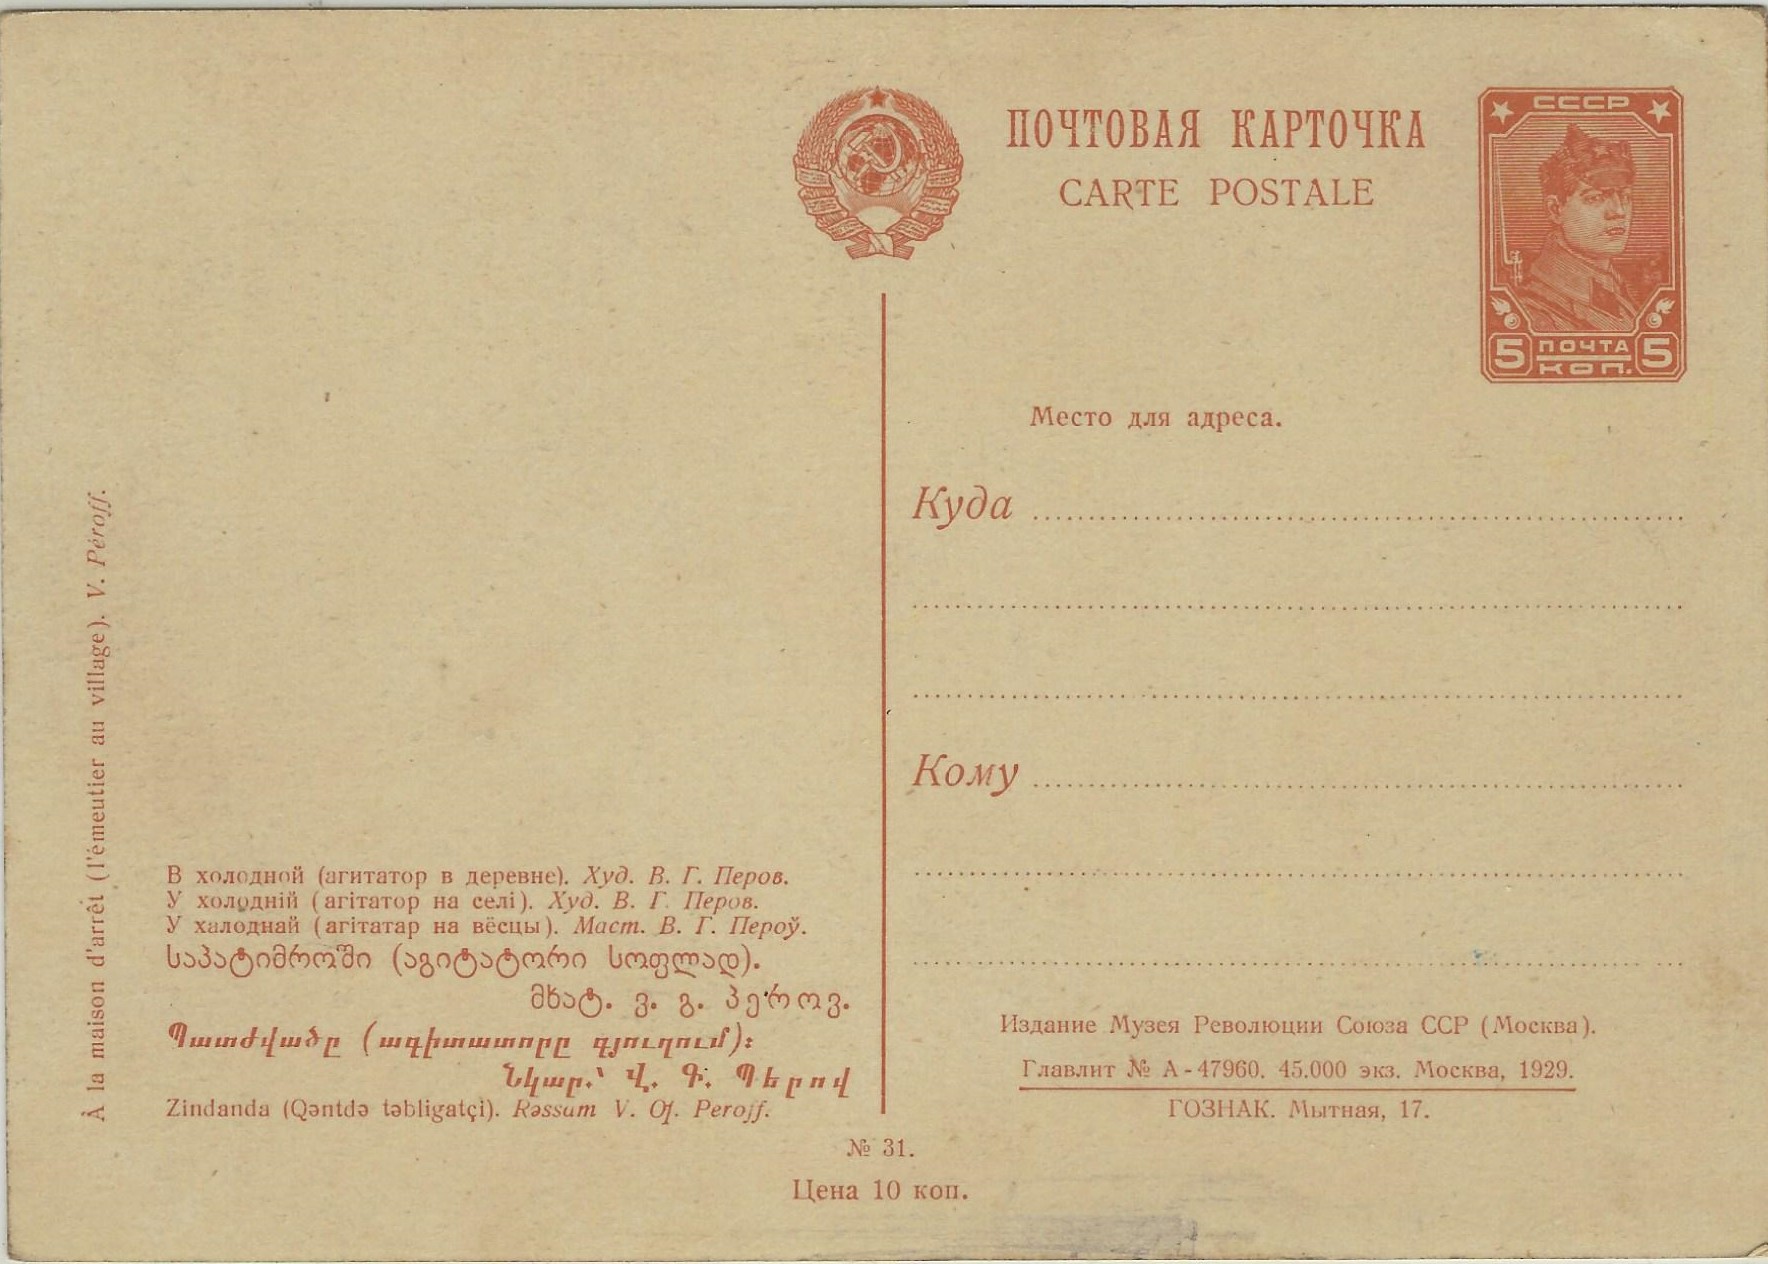 Postal Stationery - Soviet Union Scott 2601 